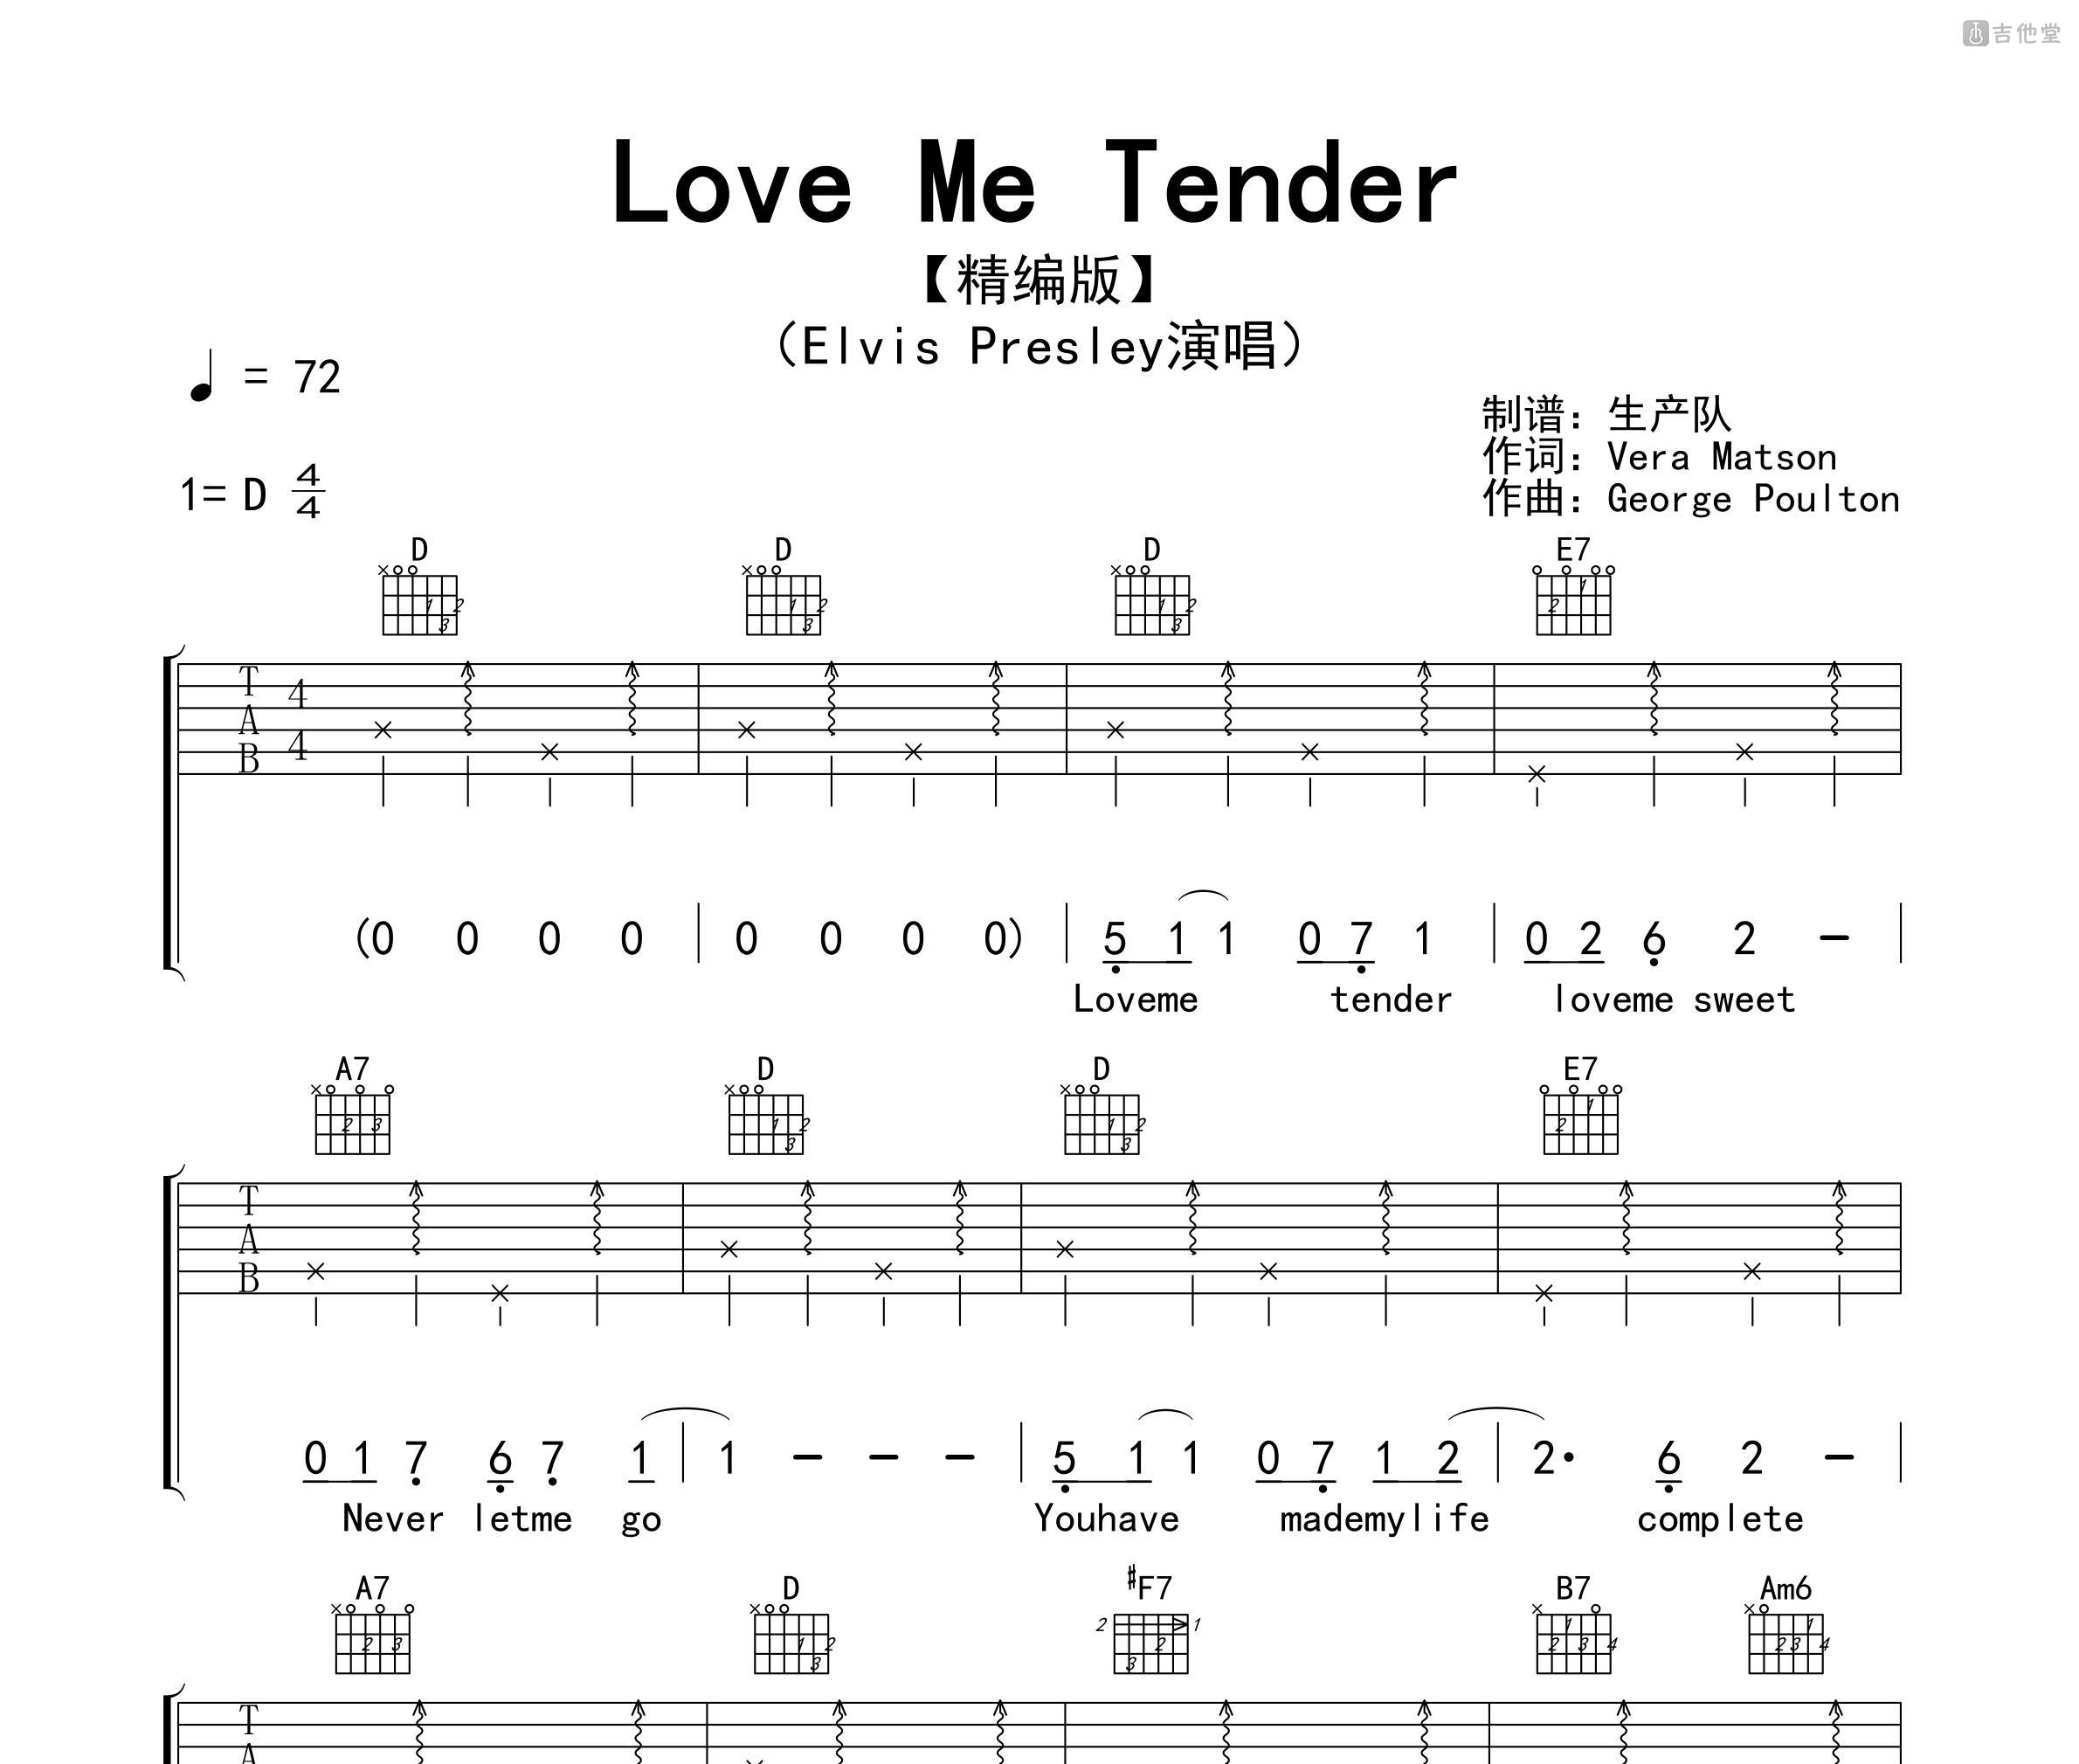 Love Me Tender by Merle Haggard - lyrics